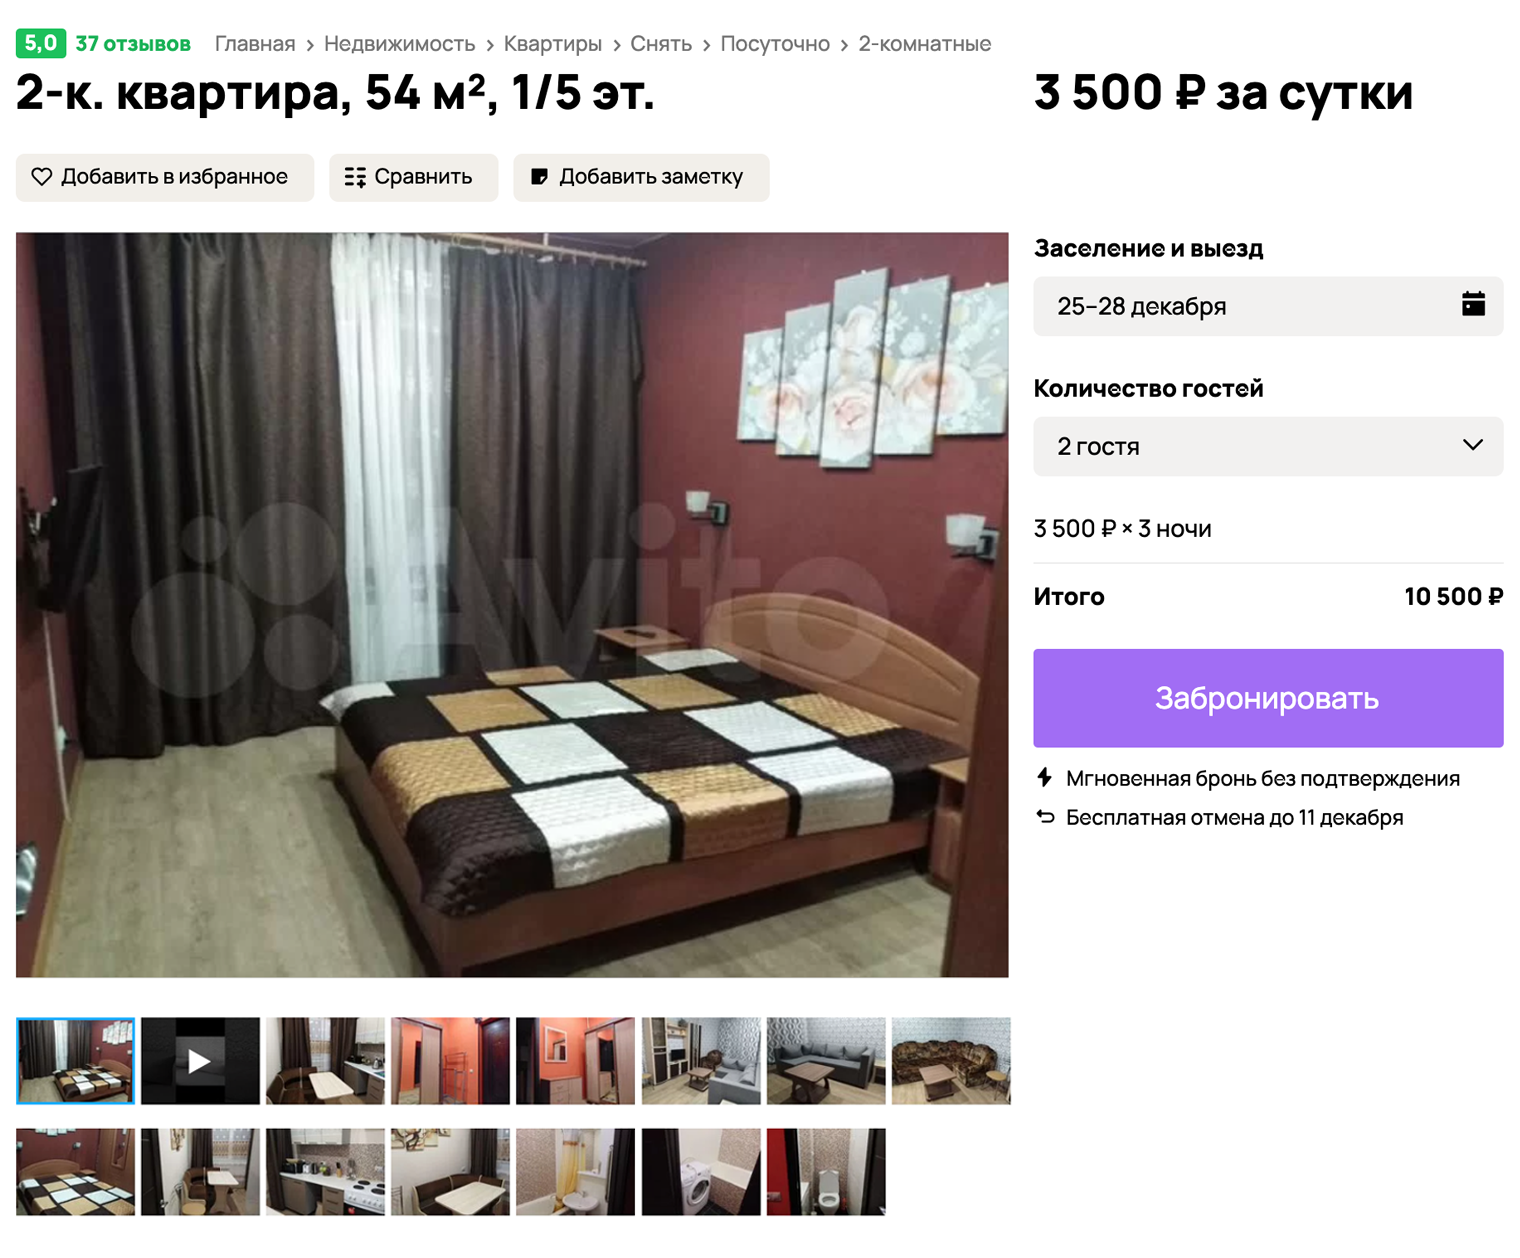 Даже в конце декабря можно снять жилье за хорошую цену. Источник: avito.ru